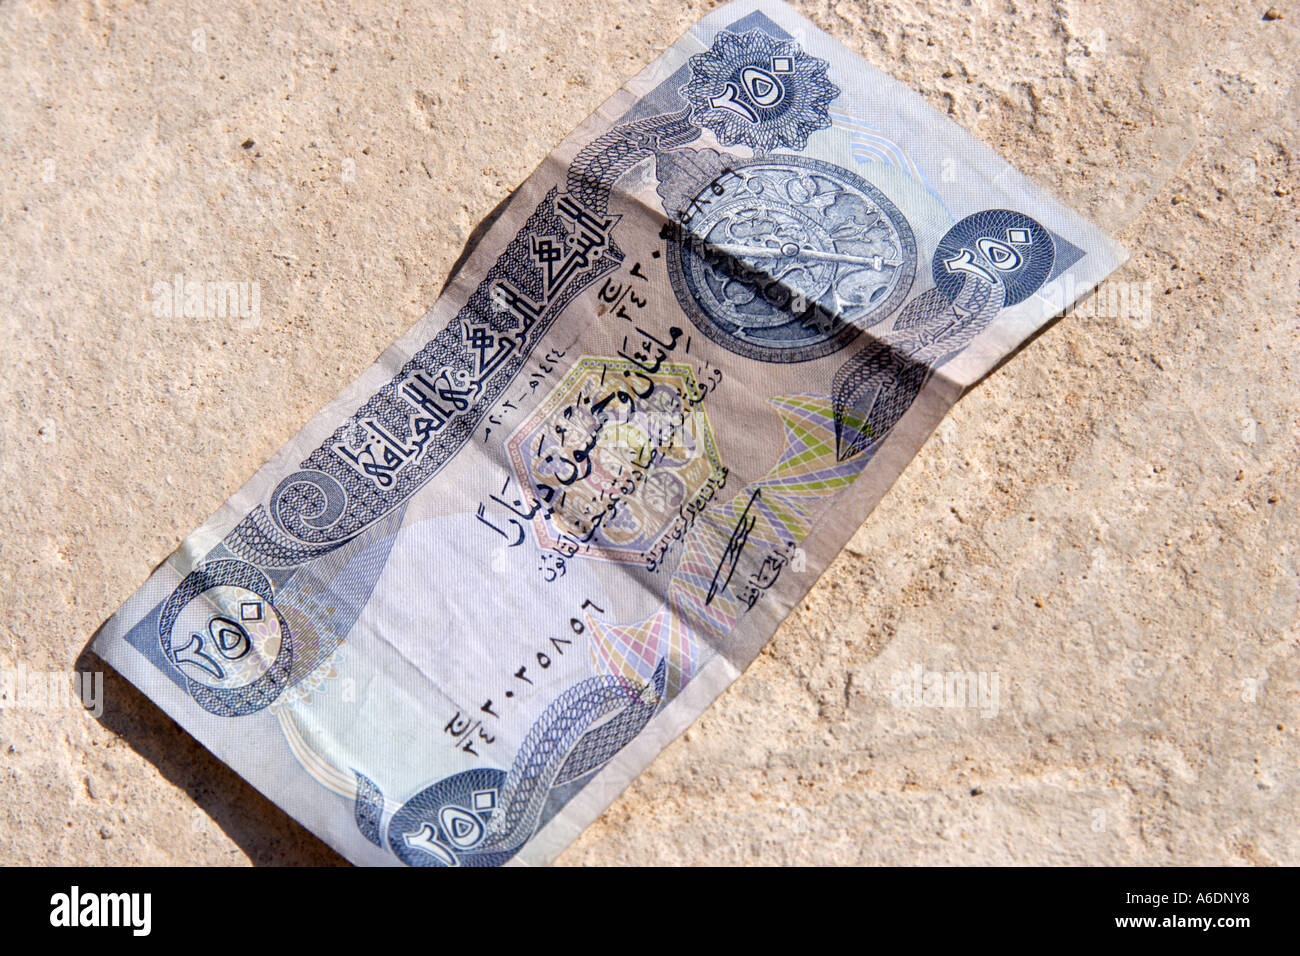 Un nouveau Dinar irakien 250 remarque émise après la chute de Saddam Hussein Banque D'Images